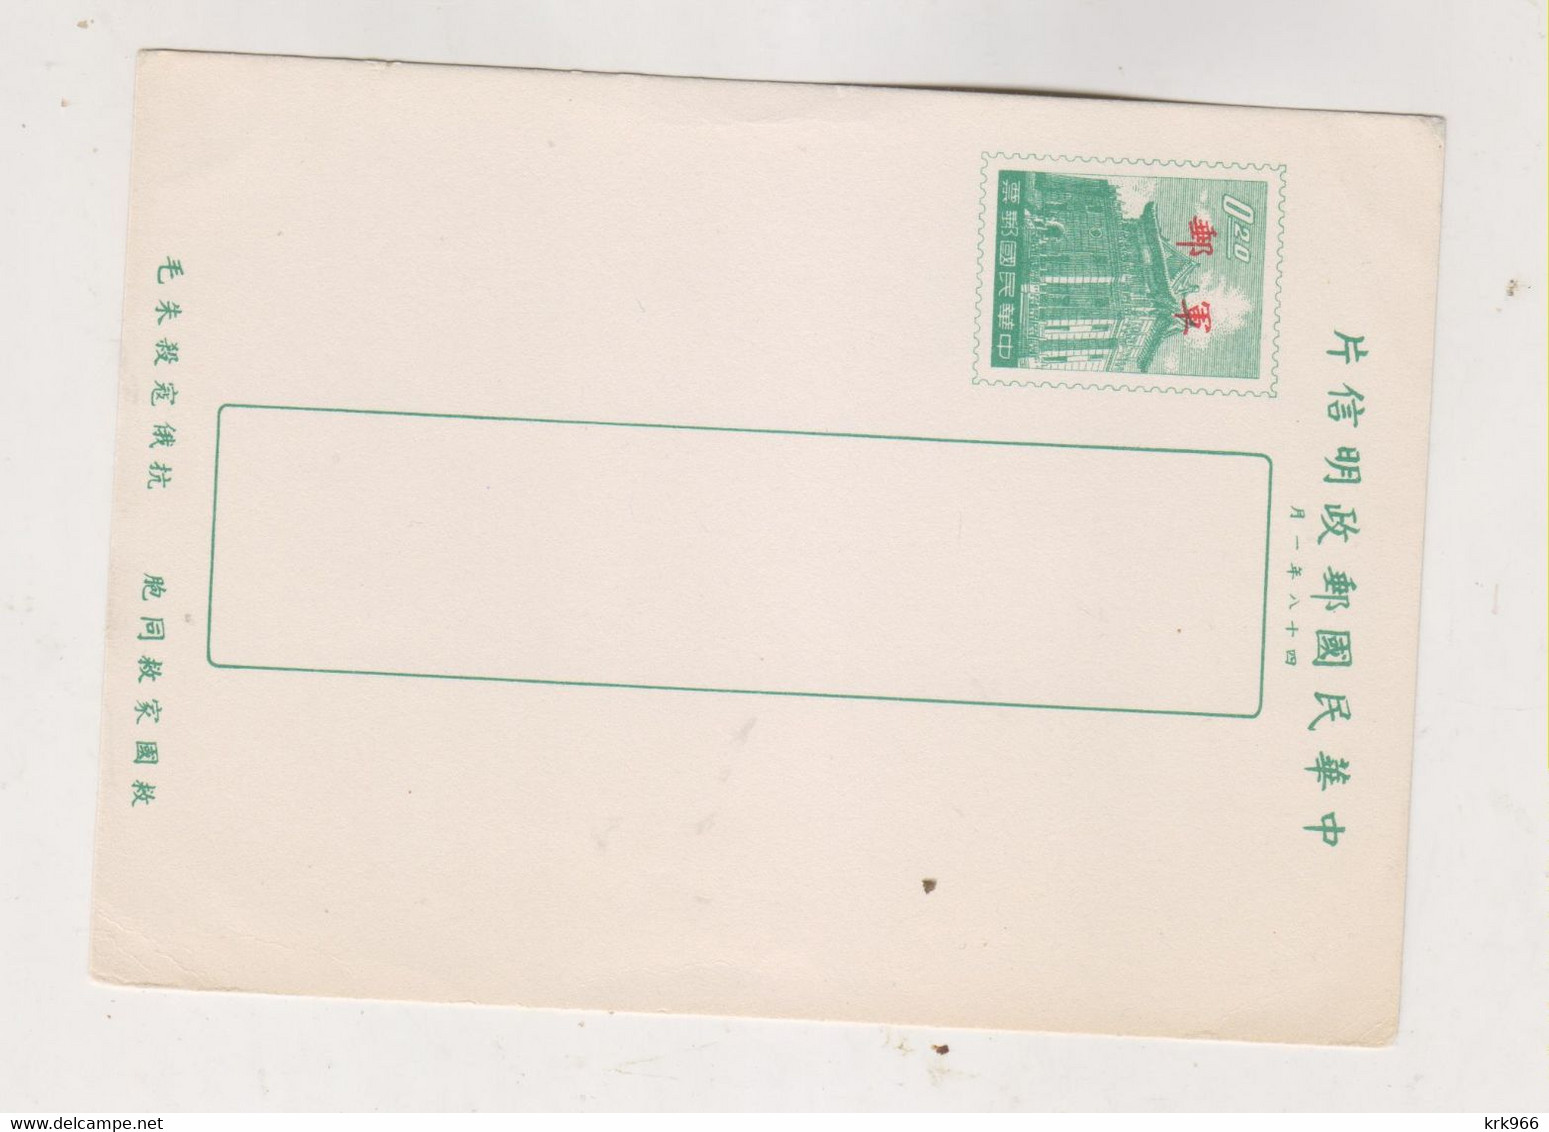 TAIWAN Postal Stationery Unused - Interi Postali